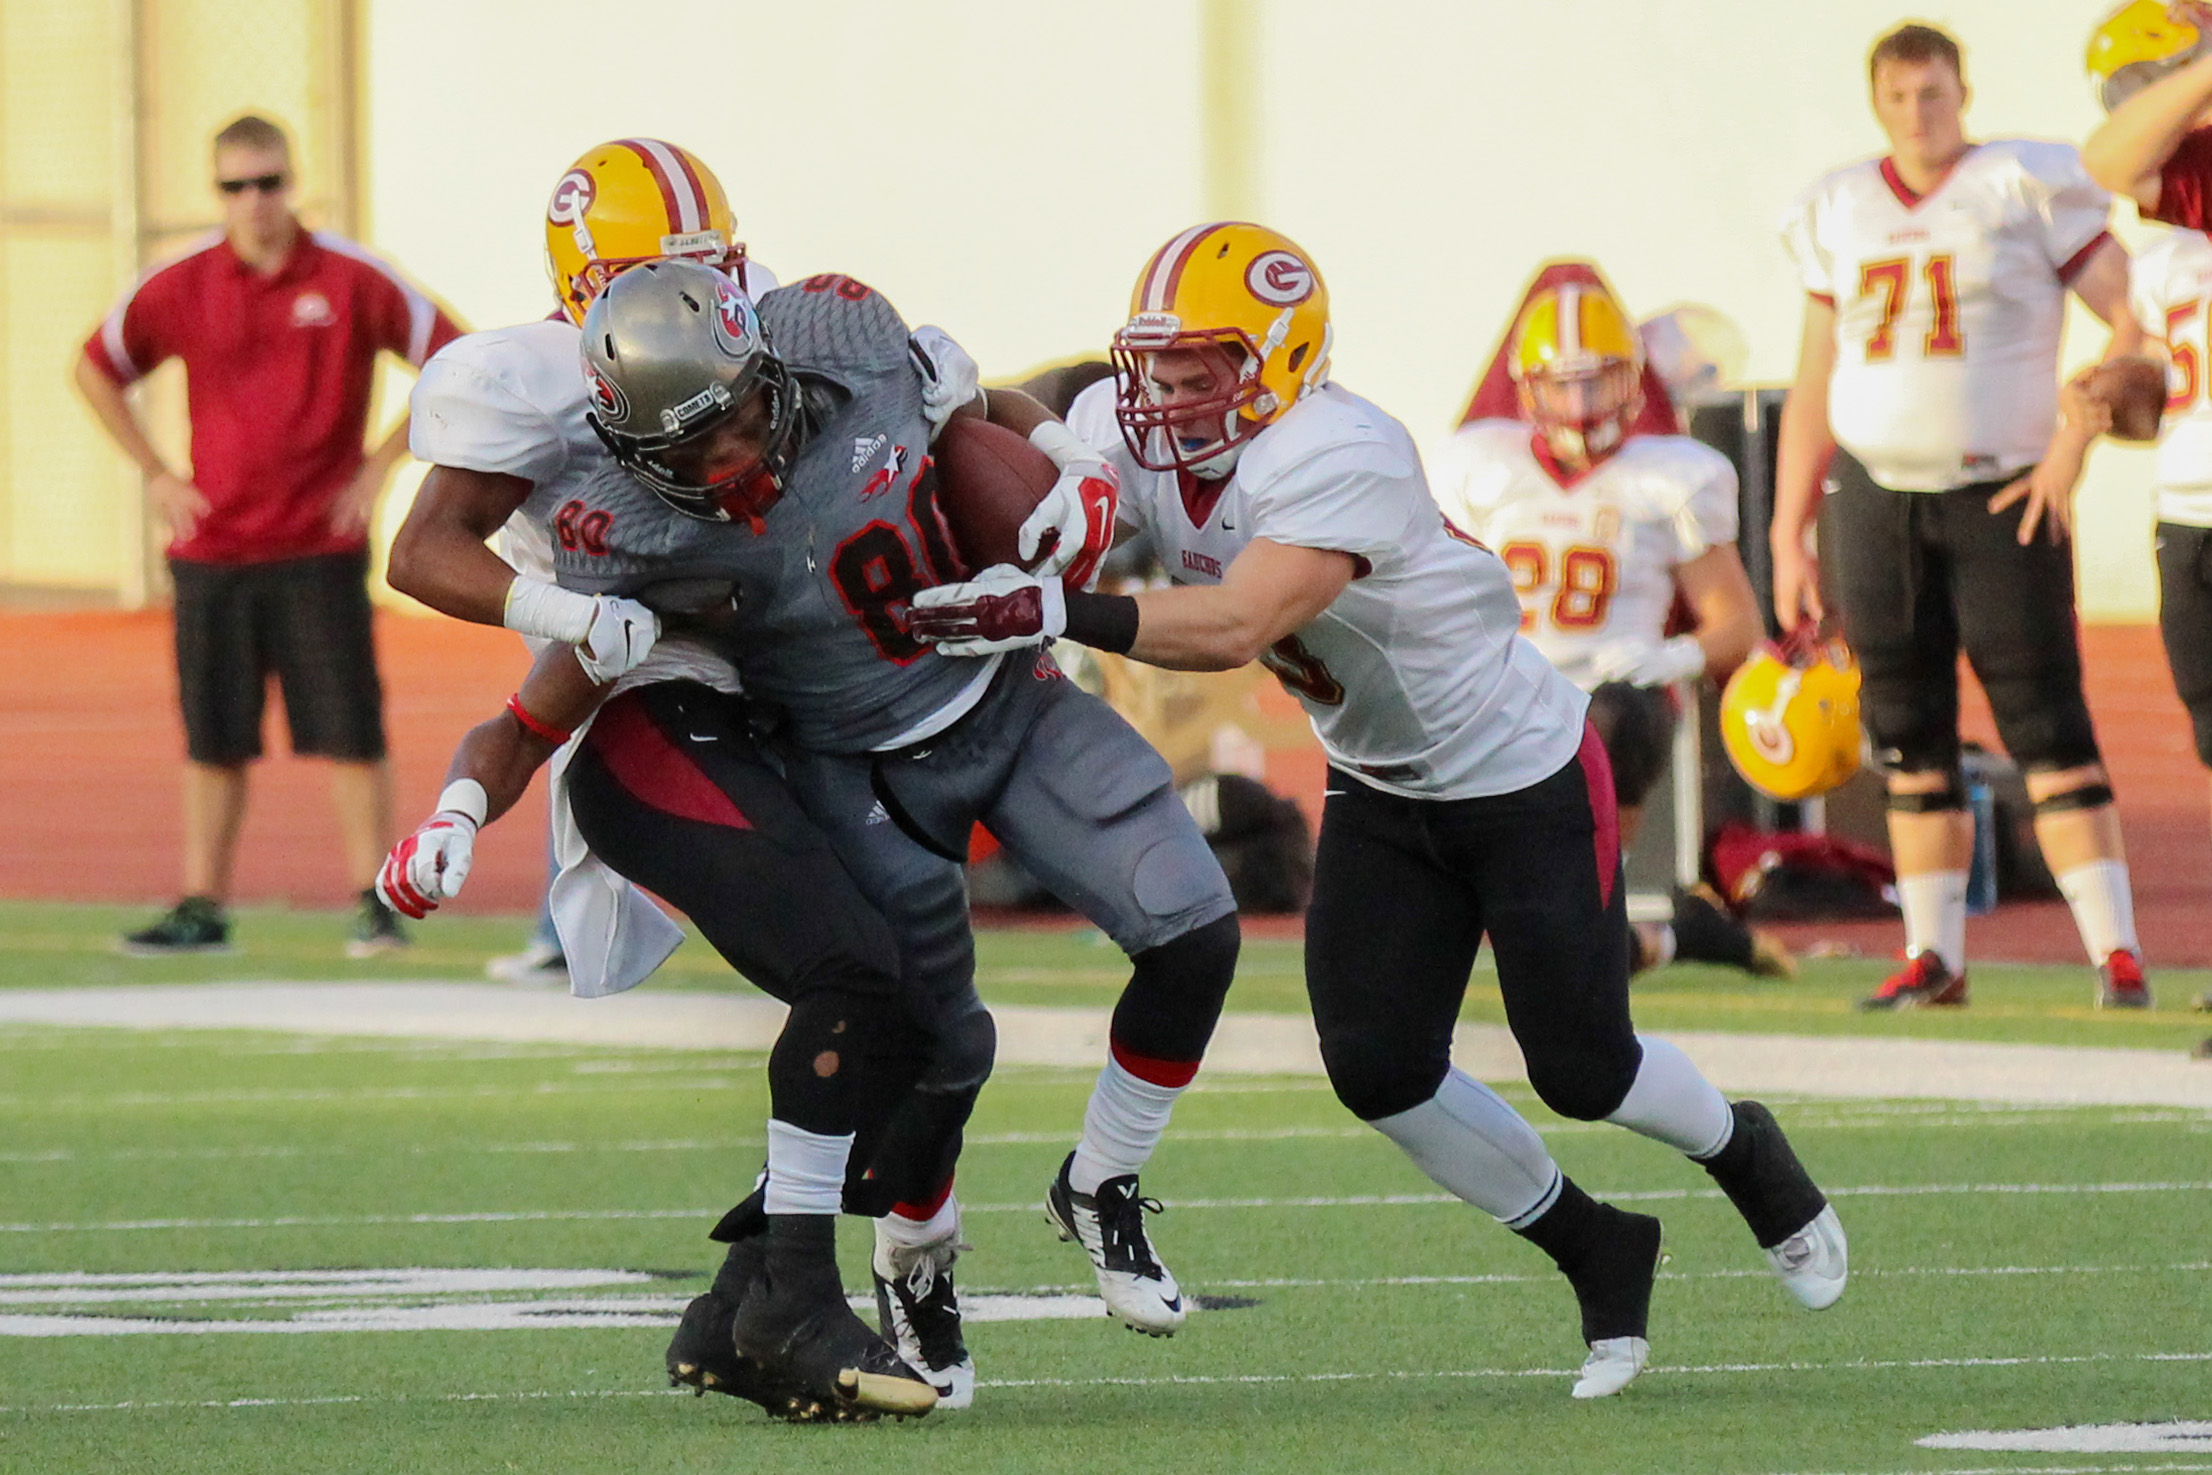 Two Saddleback football players tackle a Palomar football player.